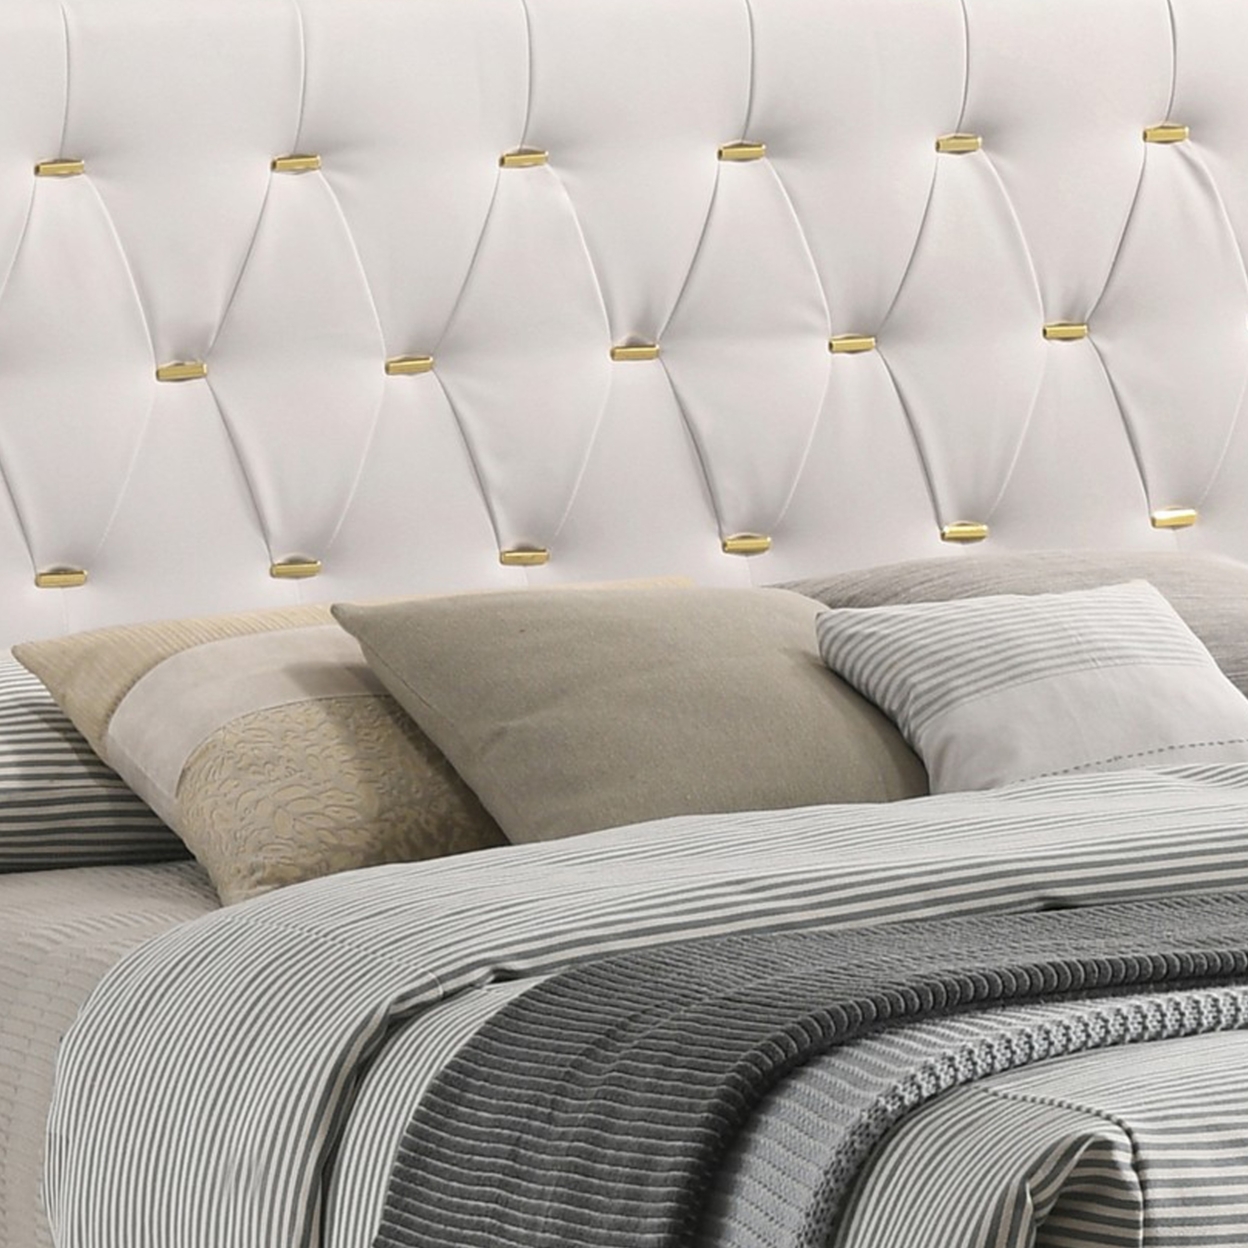 Lif Platform Queen Size Bed, Panel Tufted Headboard, Gold Legs White Velvet- Saltoro Sherpi